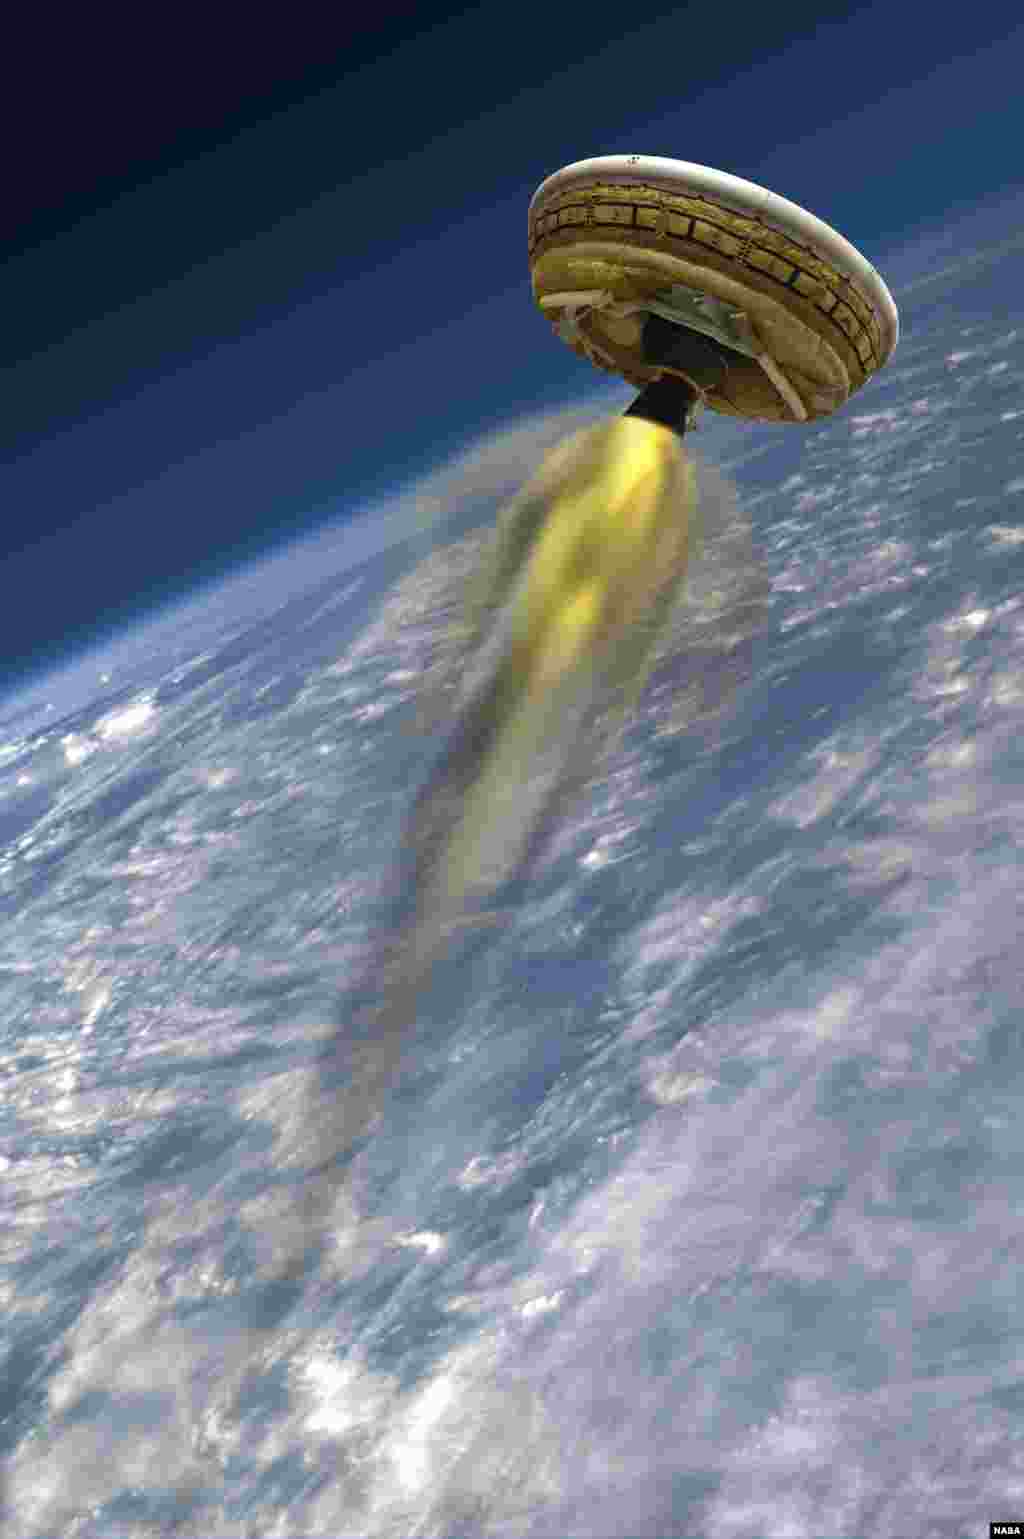 Hình ảnh do họa sĩ vẽ cho thấy phi thuyền thử nghiệm cho Phi thuyền Giảm tốc Siêu thanh Khối lượng riêng Thấp của NASA (LDSD), được thiết kế để thử nghiệm công nghệ đổ bộ cho những sứ mạng Sao Hỏa trong tương lai. Dự án LDSD sẽ phóng một phi thuyền thử nghiệm có hỏa tiển đẩy, hình đĩa thử xe vào vùng cận không gian từ đảo Kauai của Hawaii, vào tháng 6.